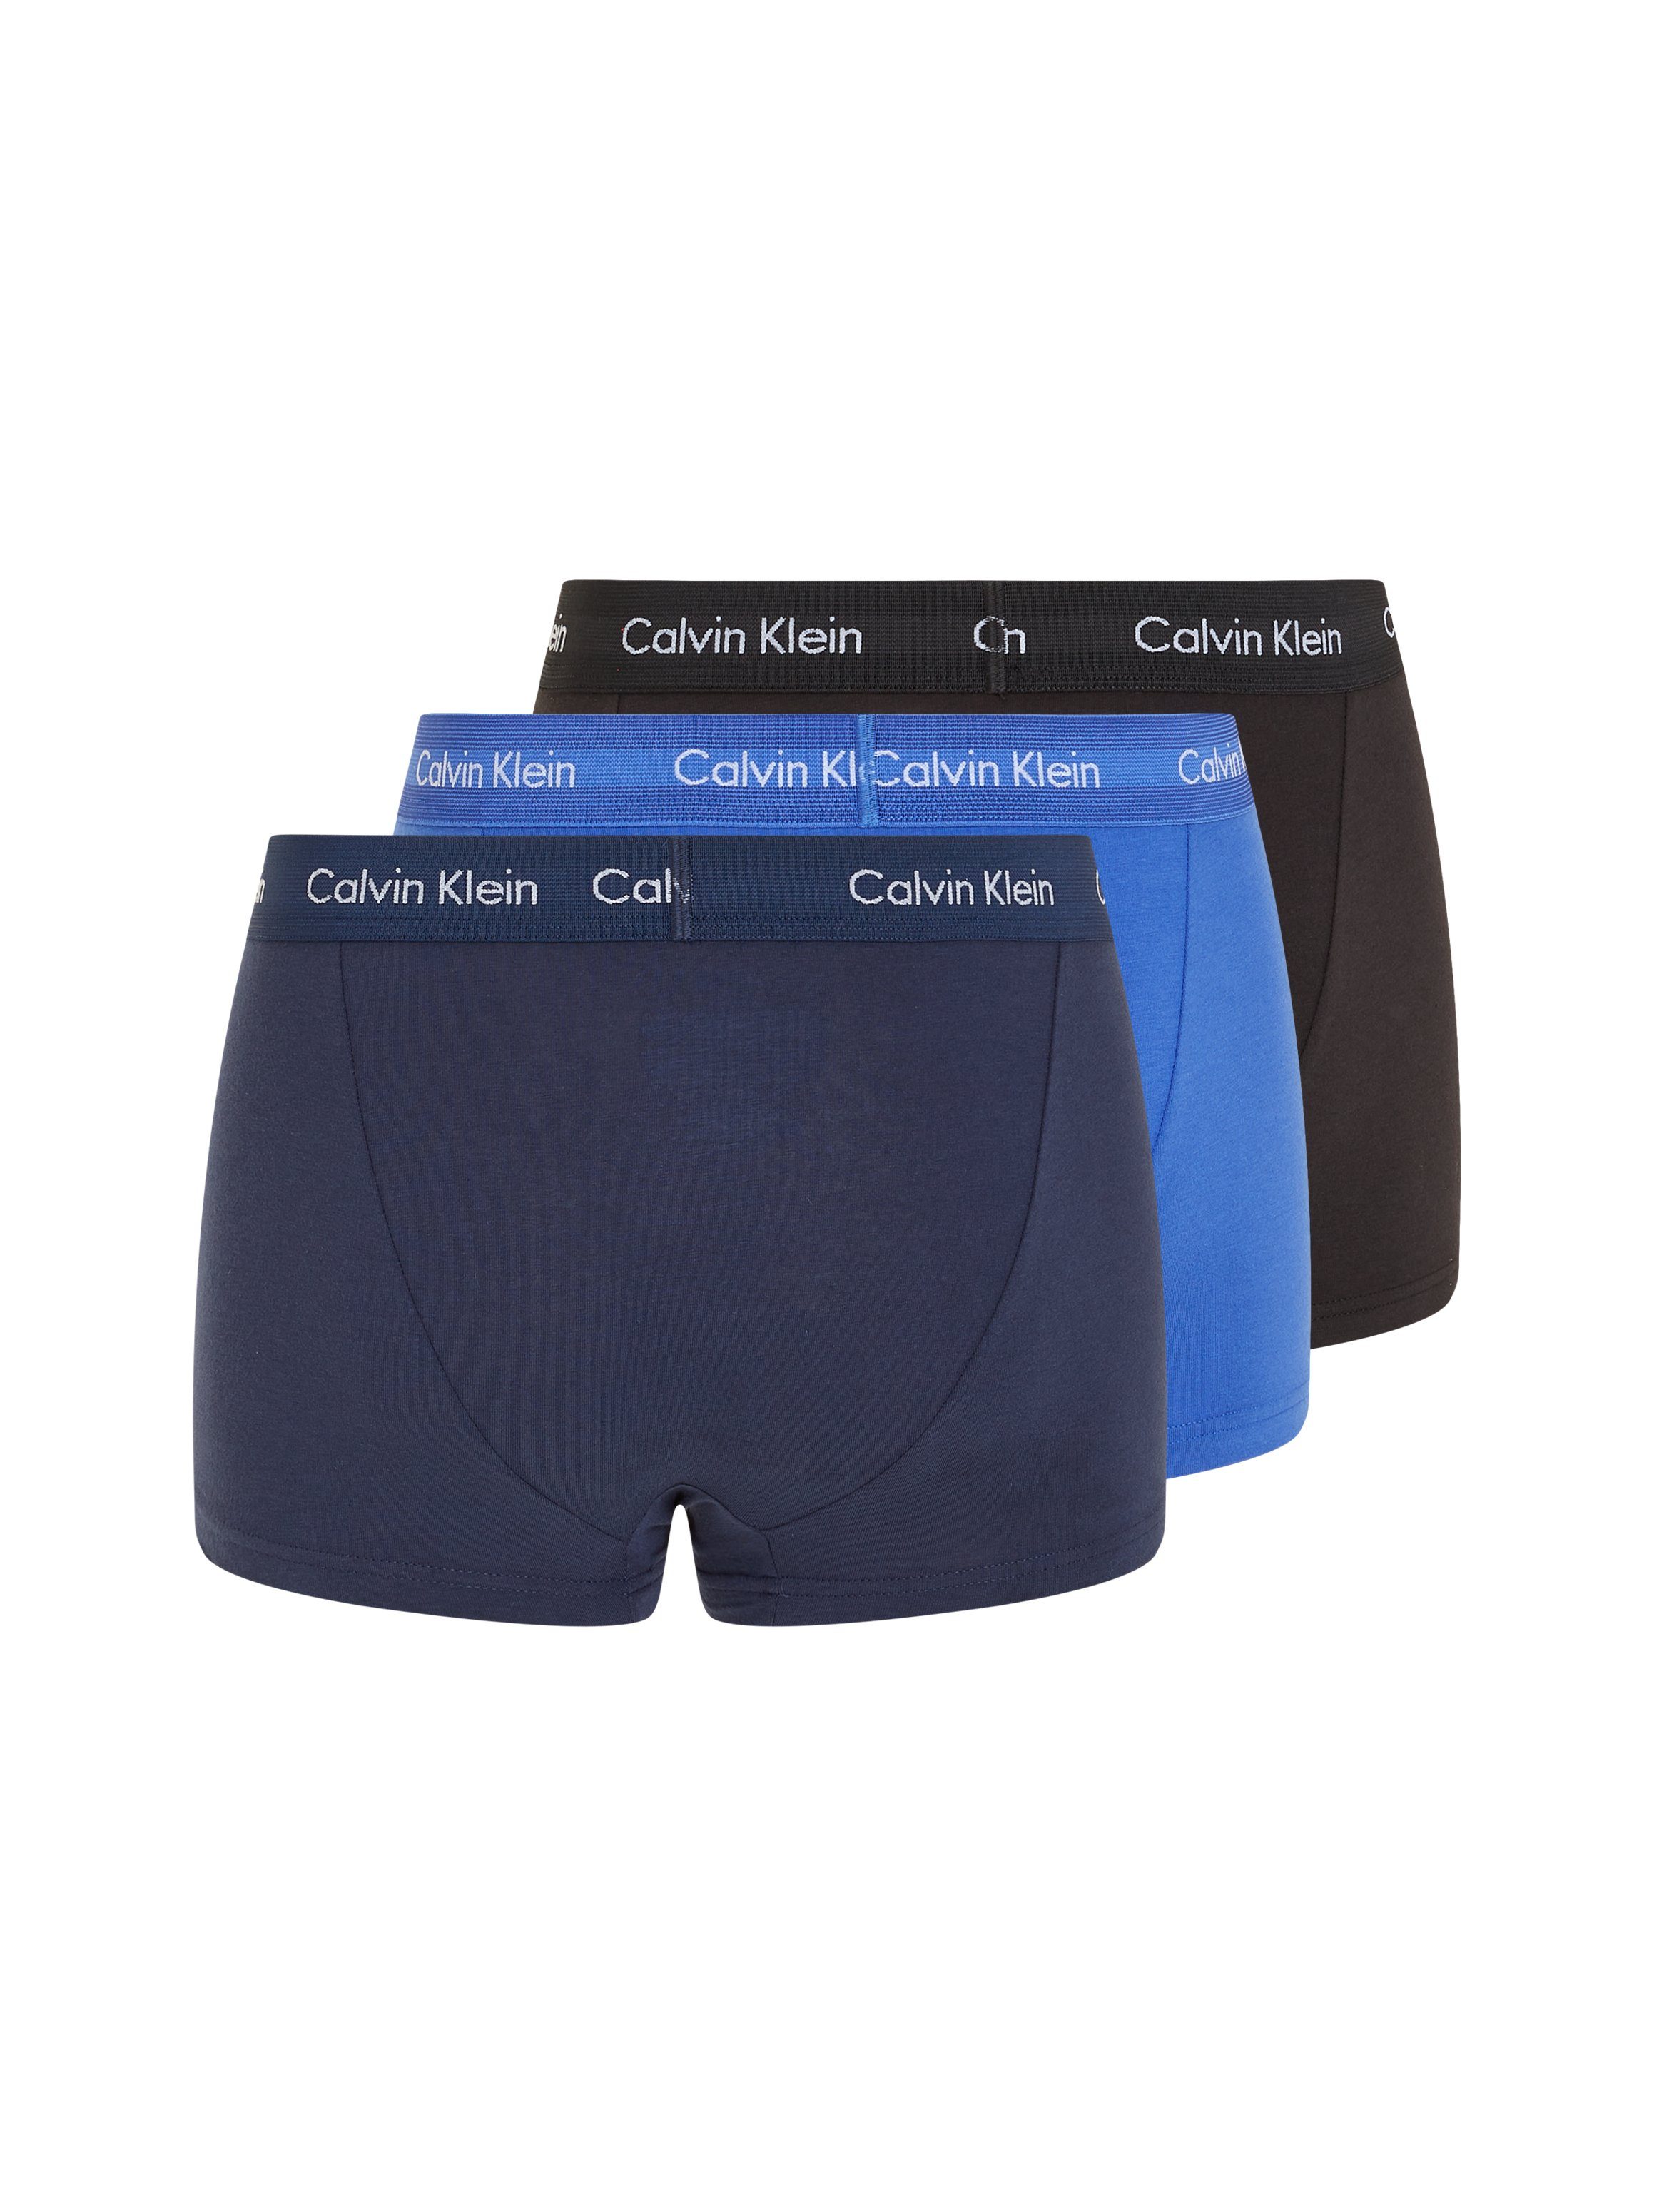 Calvin blautönen Klein Underwear (3-St) Hipster in